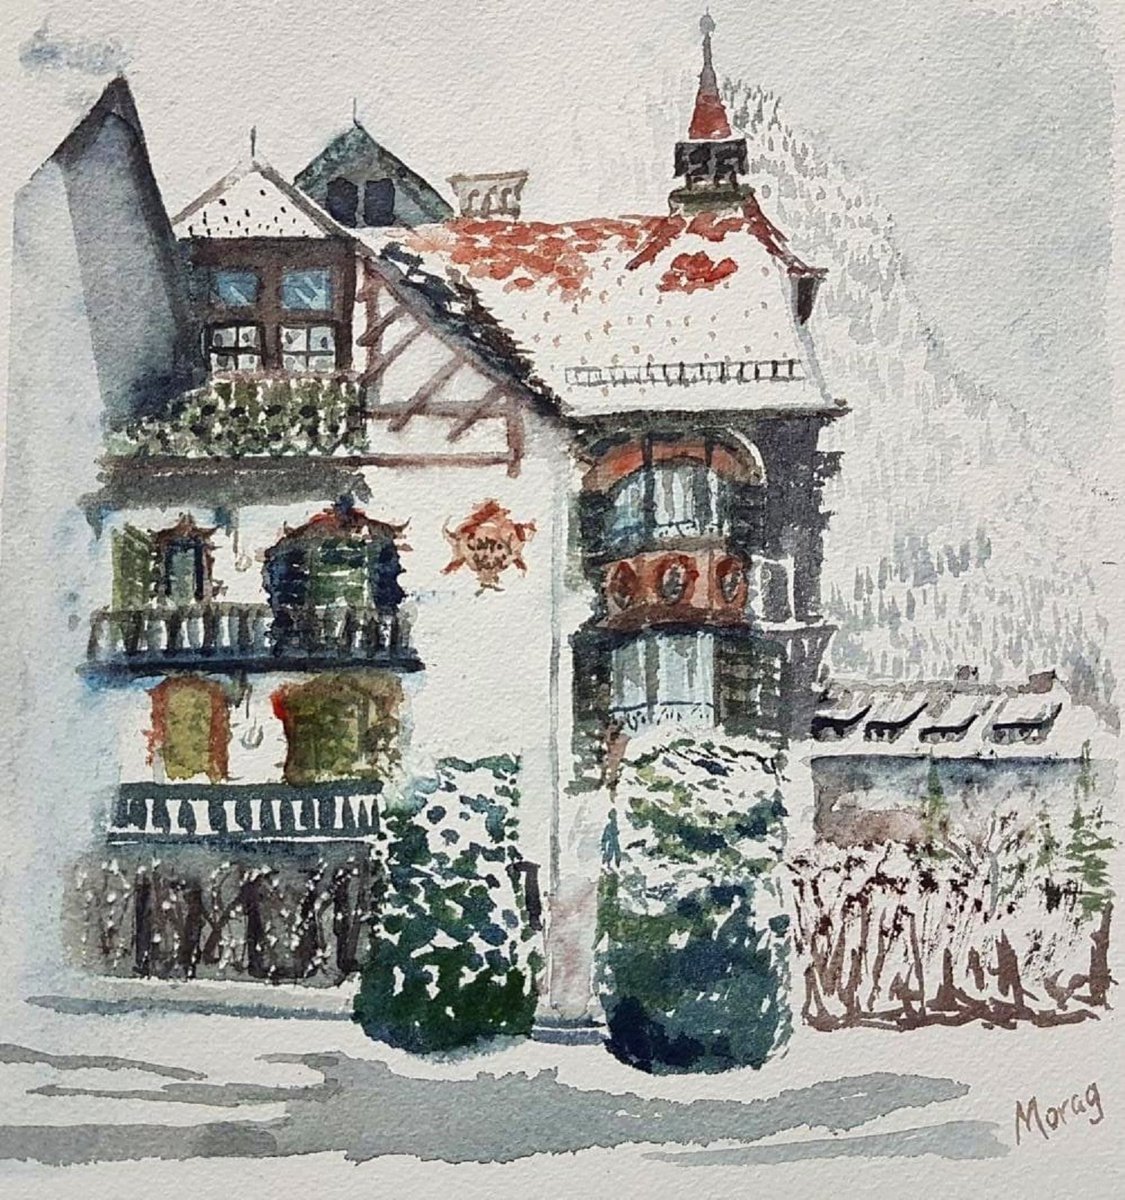 Posthotel Kassl, Tyrol by Morag Paul